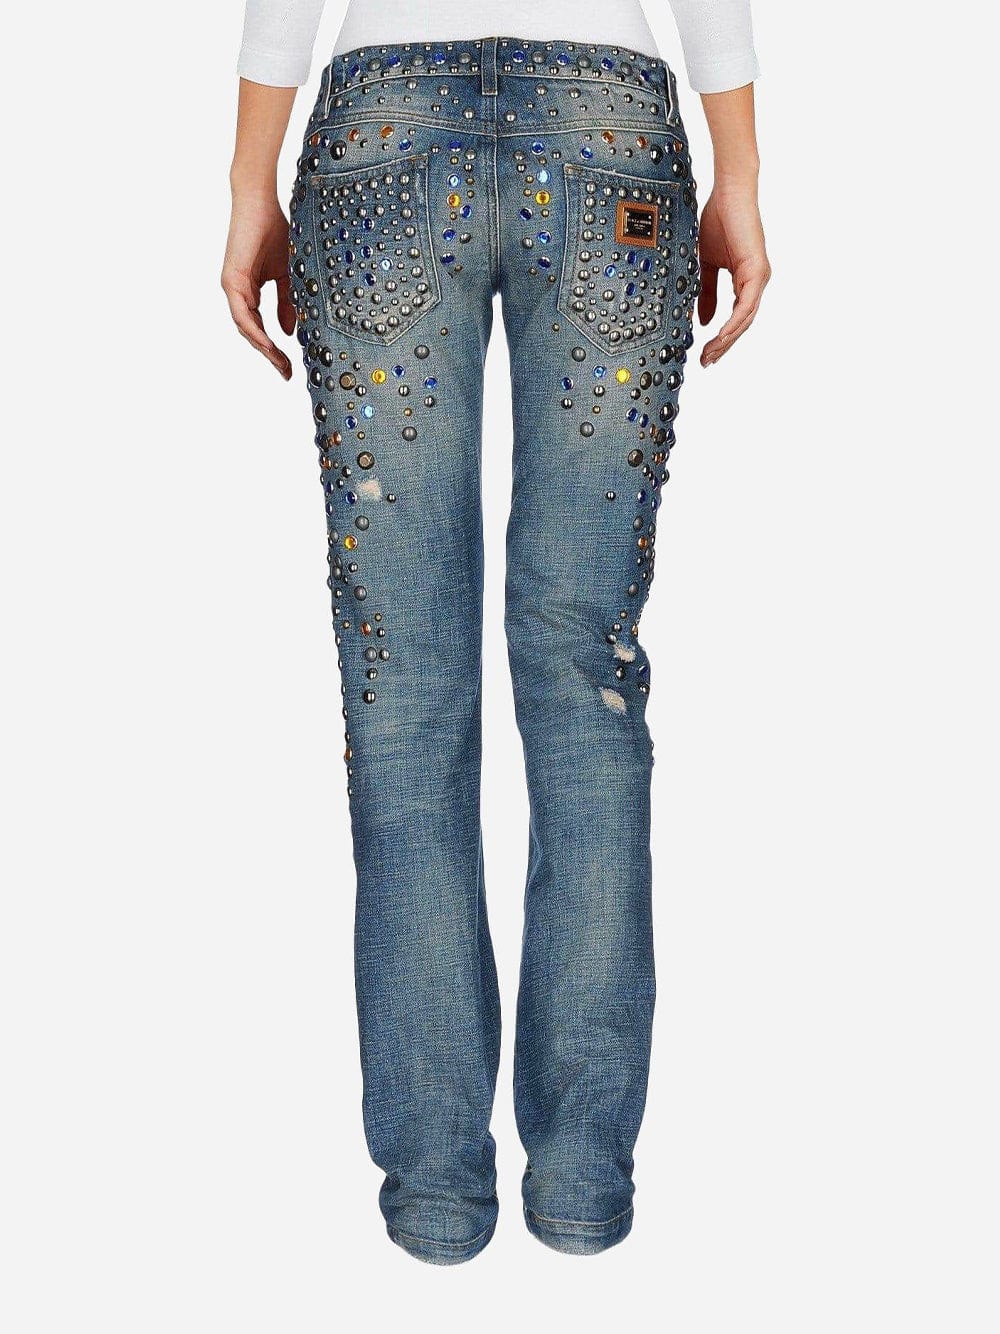 Dolce & Gabbana Embellished Slim Jeans